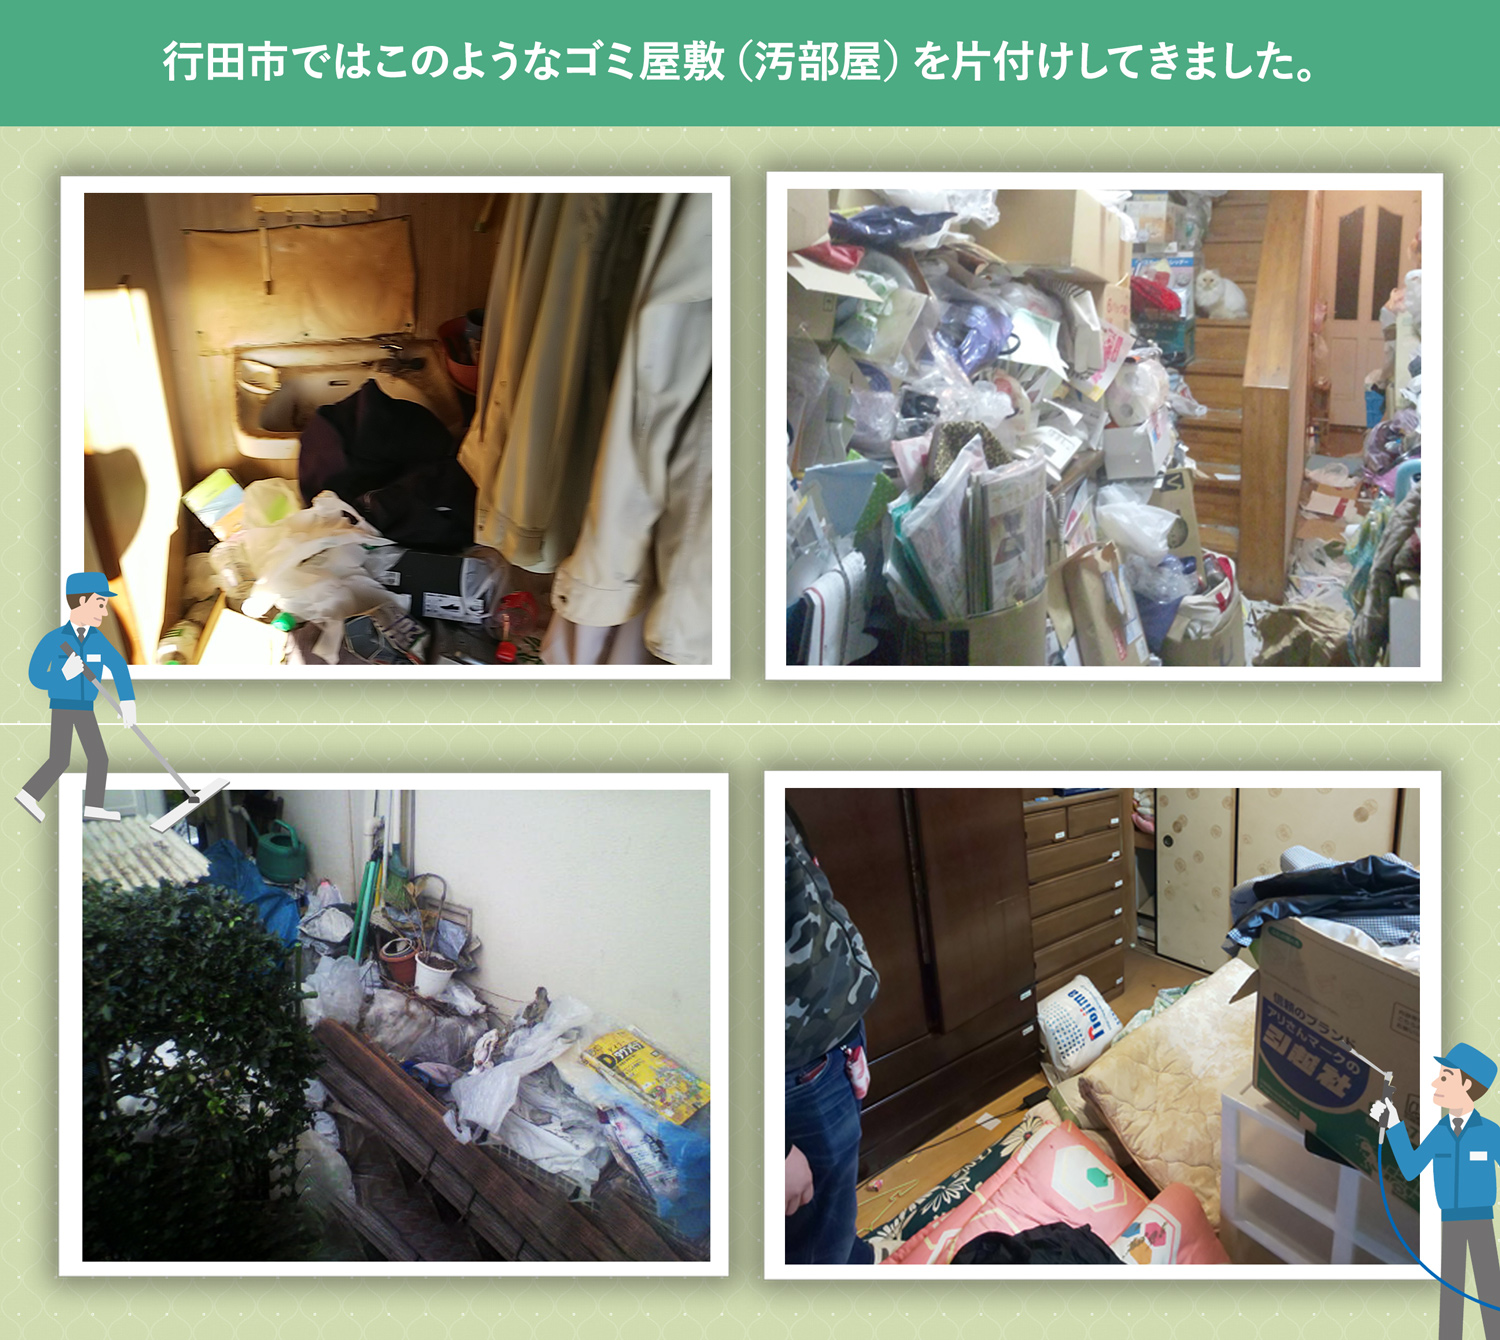 行田市で行ったで行ったごみ屋敷・汚部屋の片付けの一例